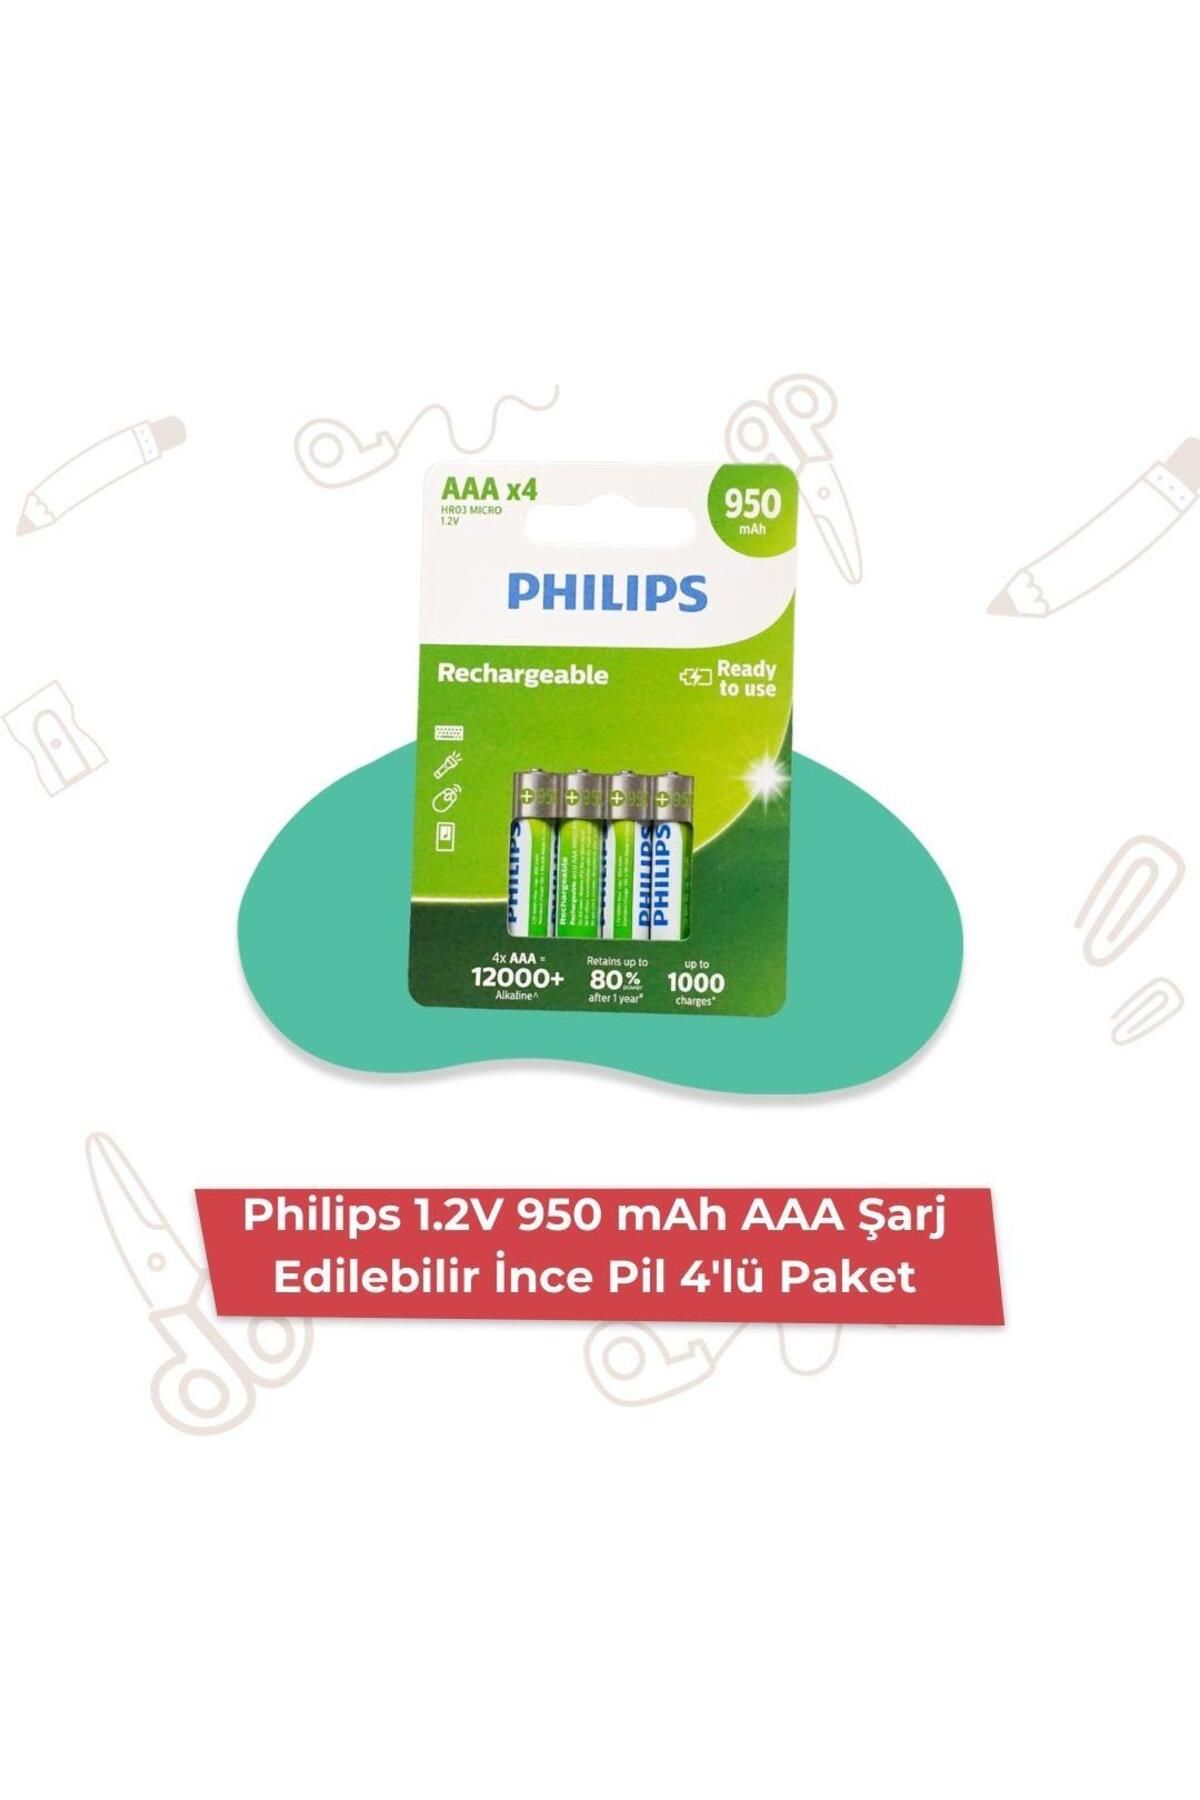 Philips 1.2V 950 mAh AAA Şarj Edilebilir İnce Pil 4'lü Paket R03B4A95/10